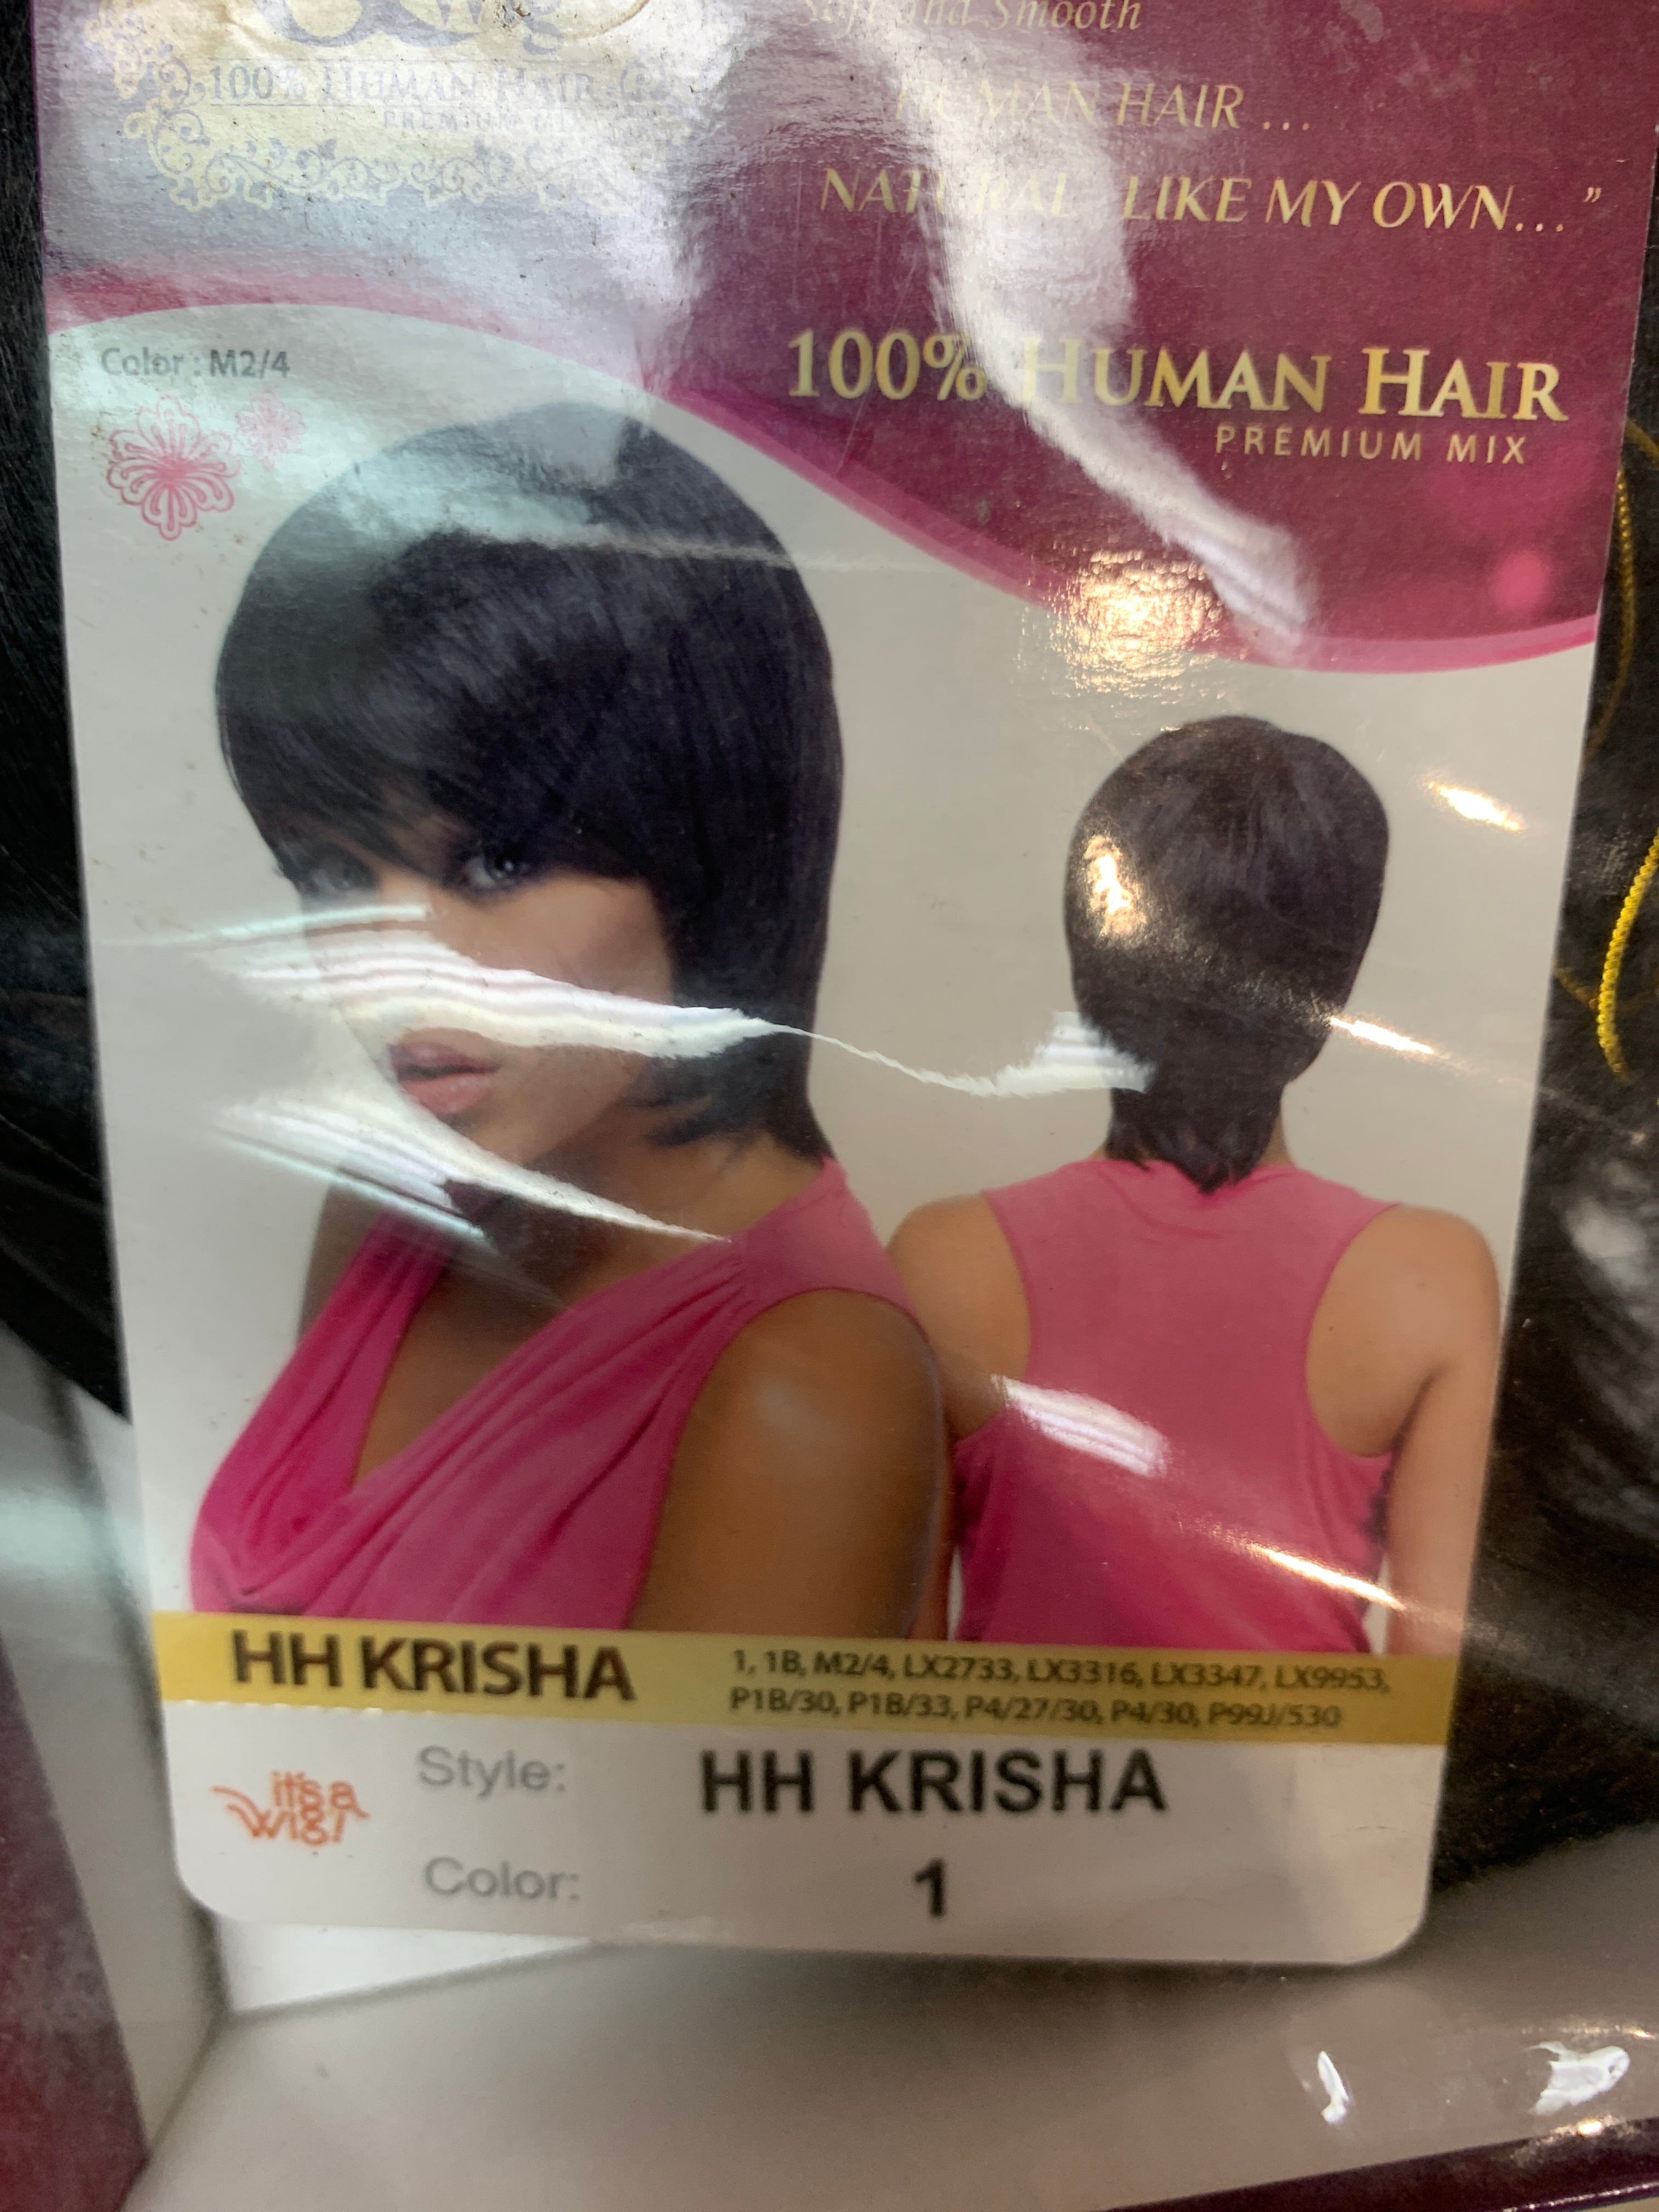 It’s a wig hh Krisha